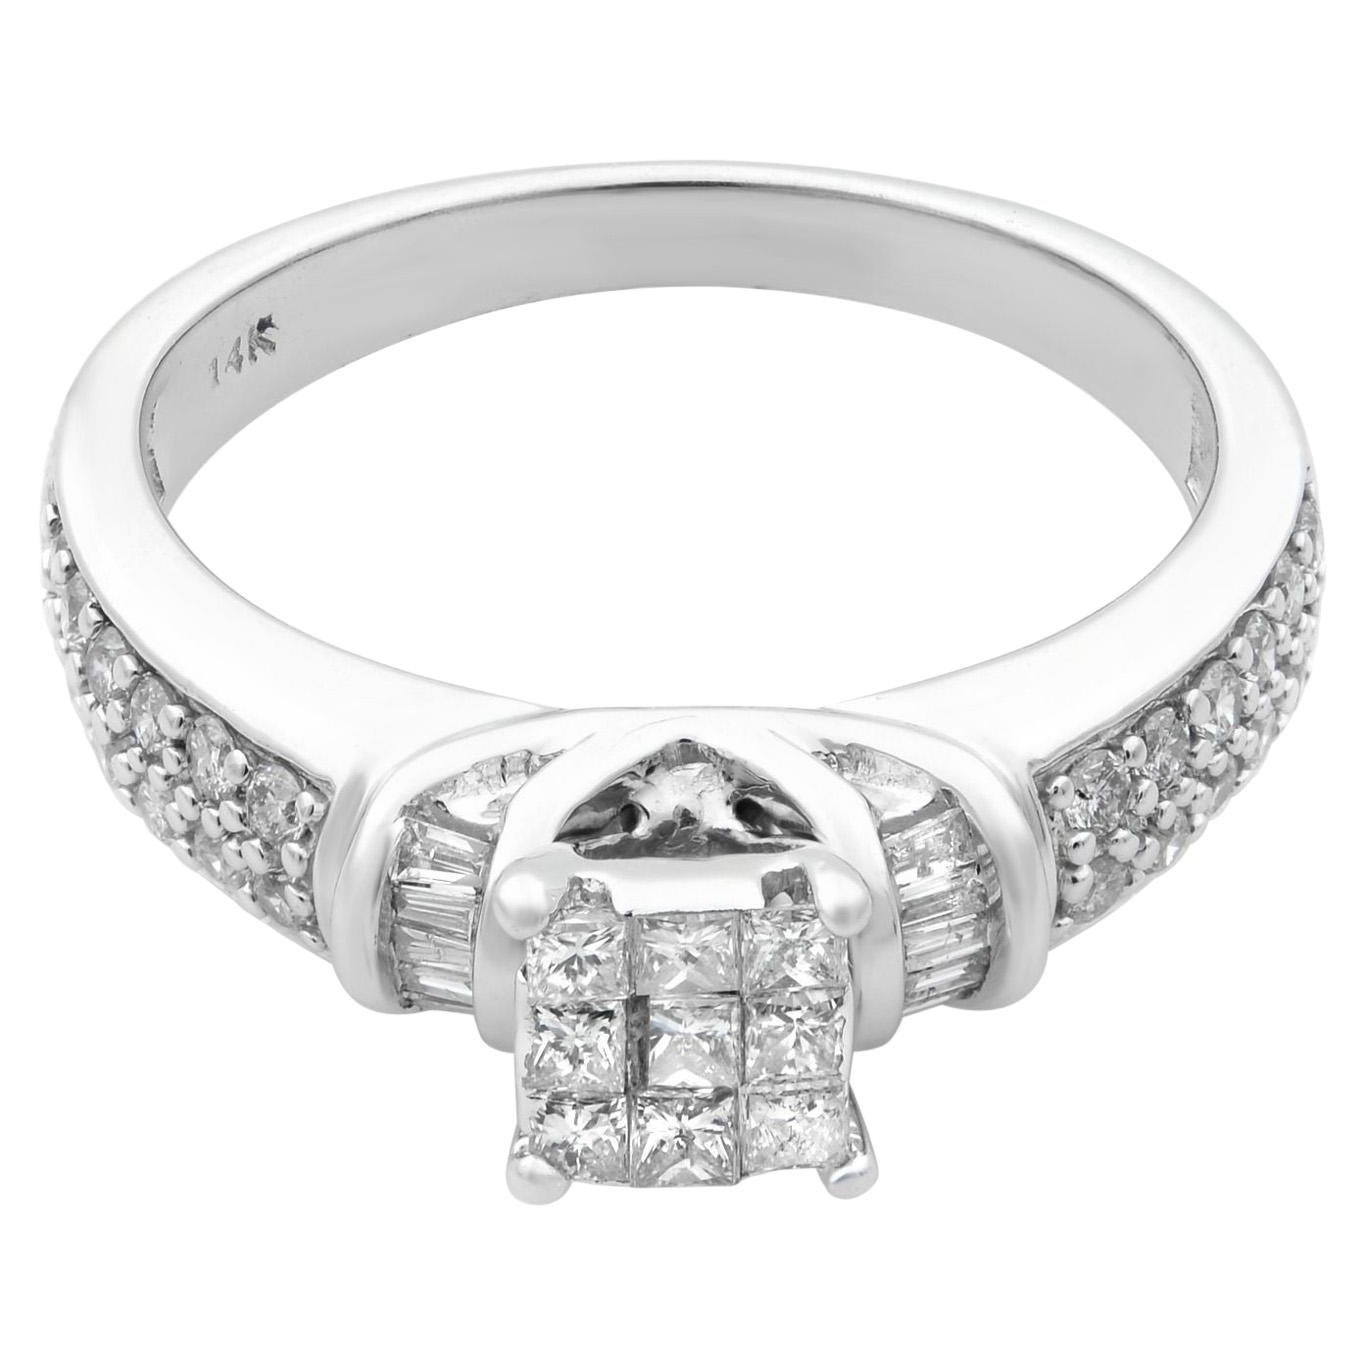 Rachel Koen Diamond Engagement Ring 14K White Gold 0.55cttw For Sale